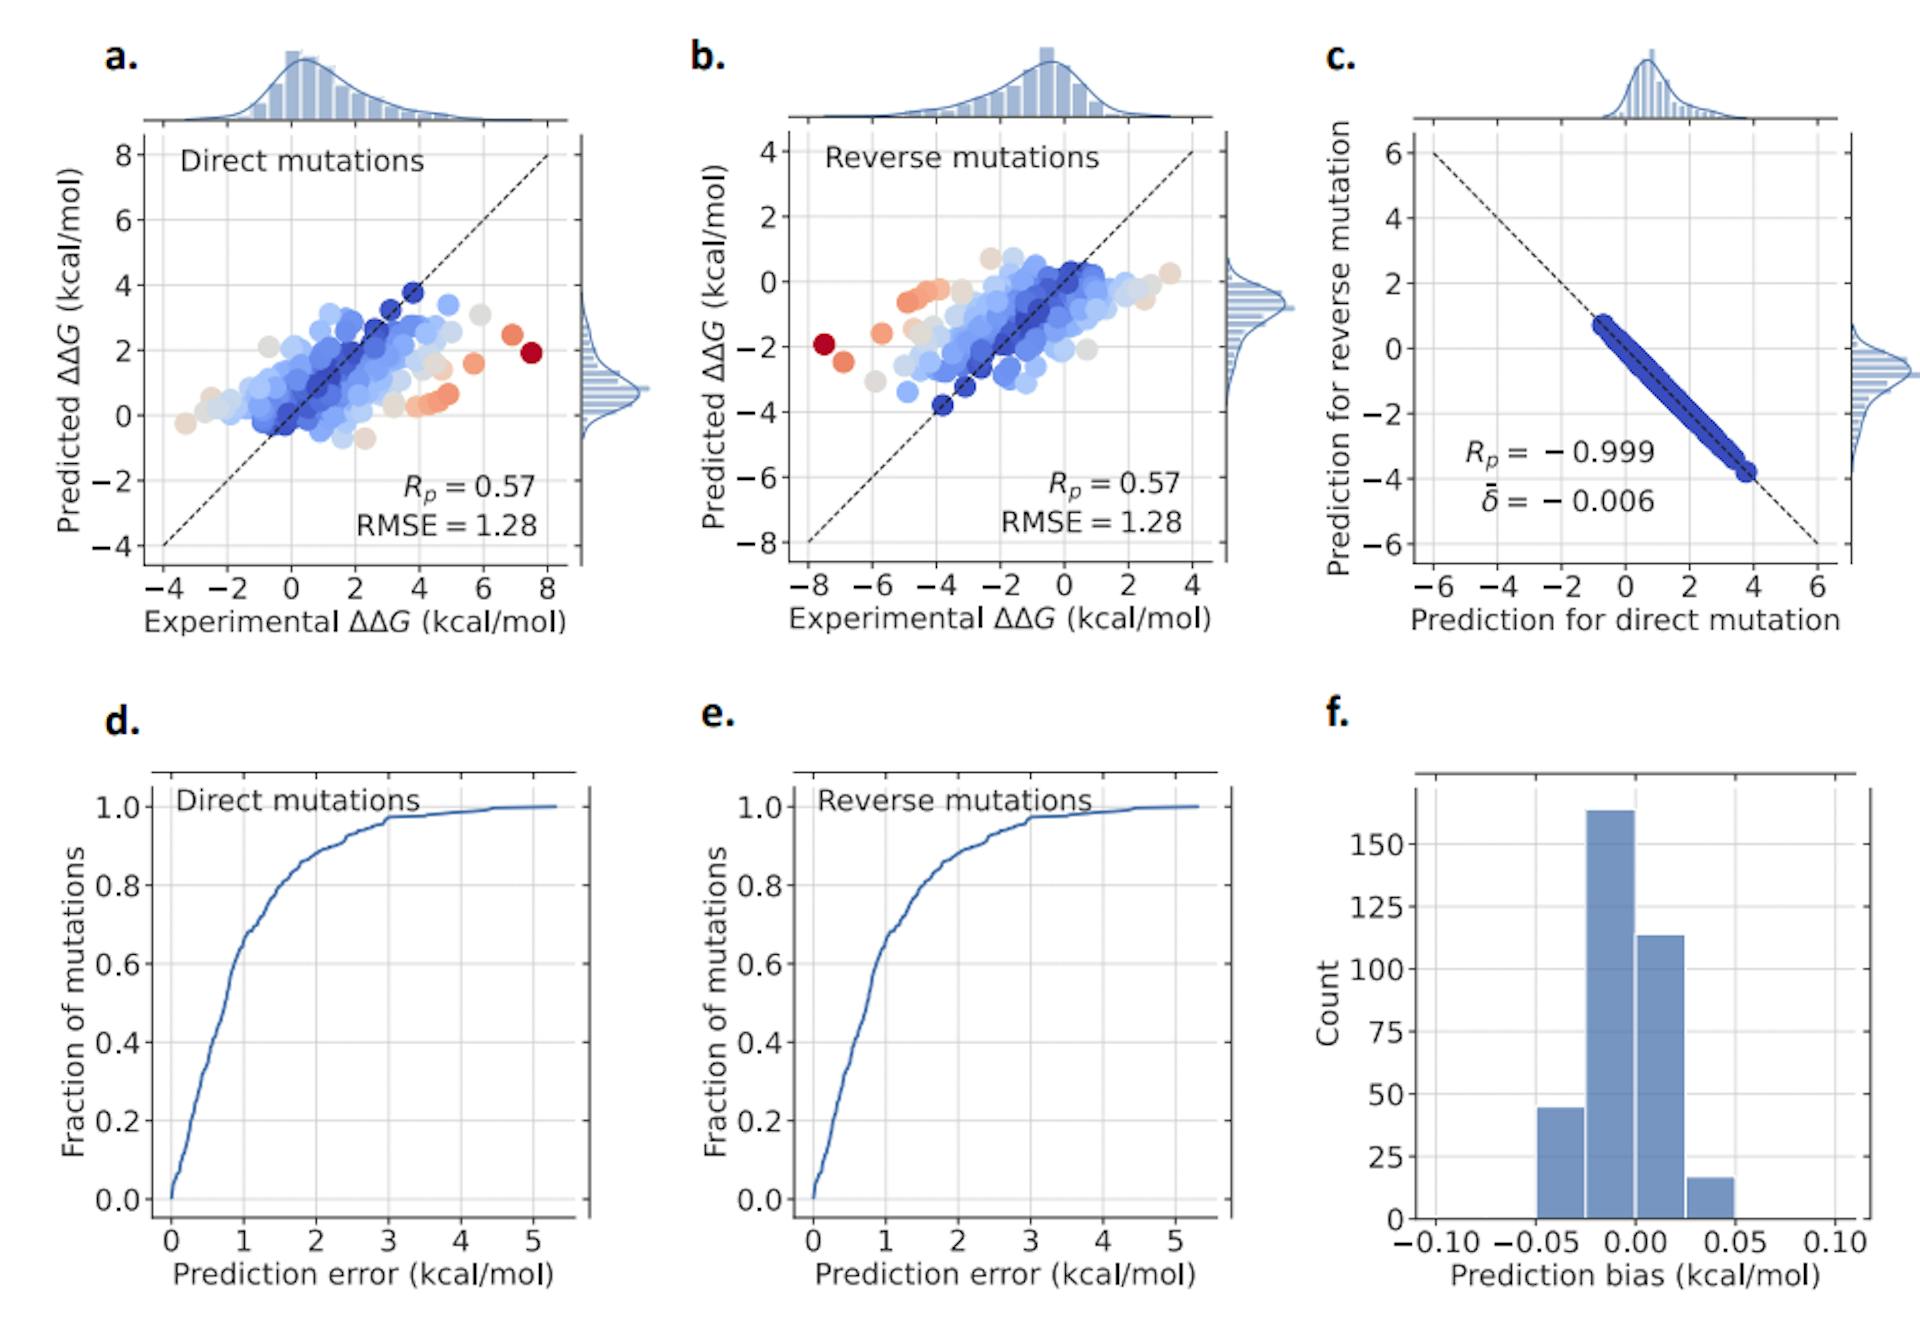 图 3：Ssym 数据集的 GGL-PPI2 模型的结果。 (a) 中绘制了直接突变，而 (b) 则显示了反向突变的结果。色谱从蓝色到红色代表相应的预测精度，其中蓝色表示精度较高，红色表示精度较低。 A